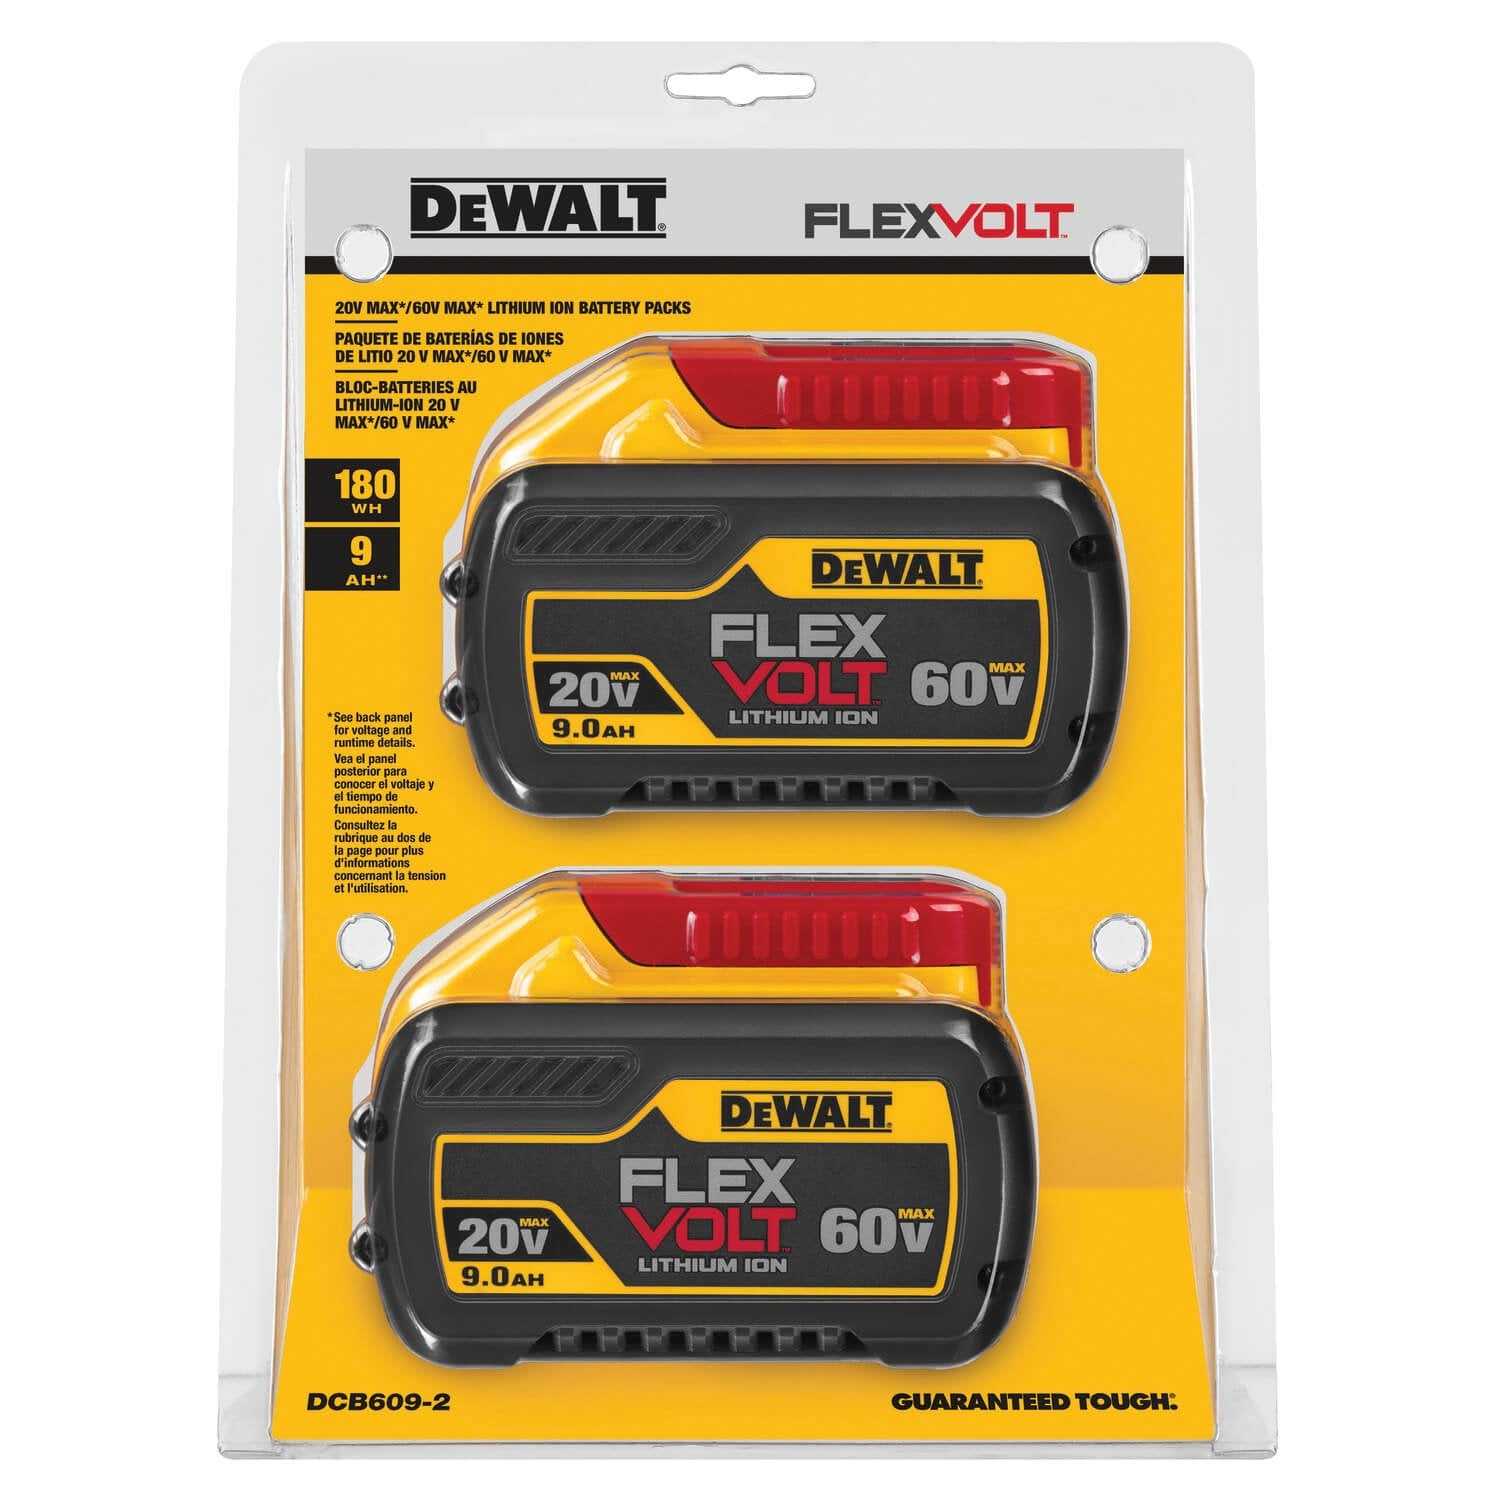 DEWALT DCB609-2 20V/60V Max Flexvolt 9.0Ah Battery, 2 Pack